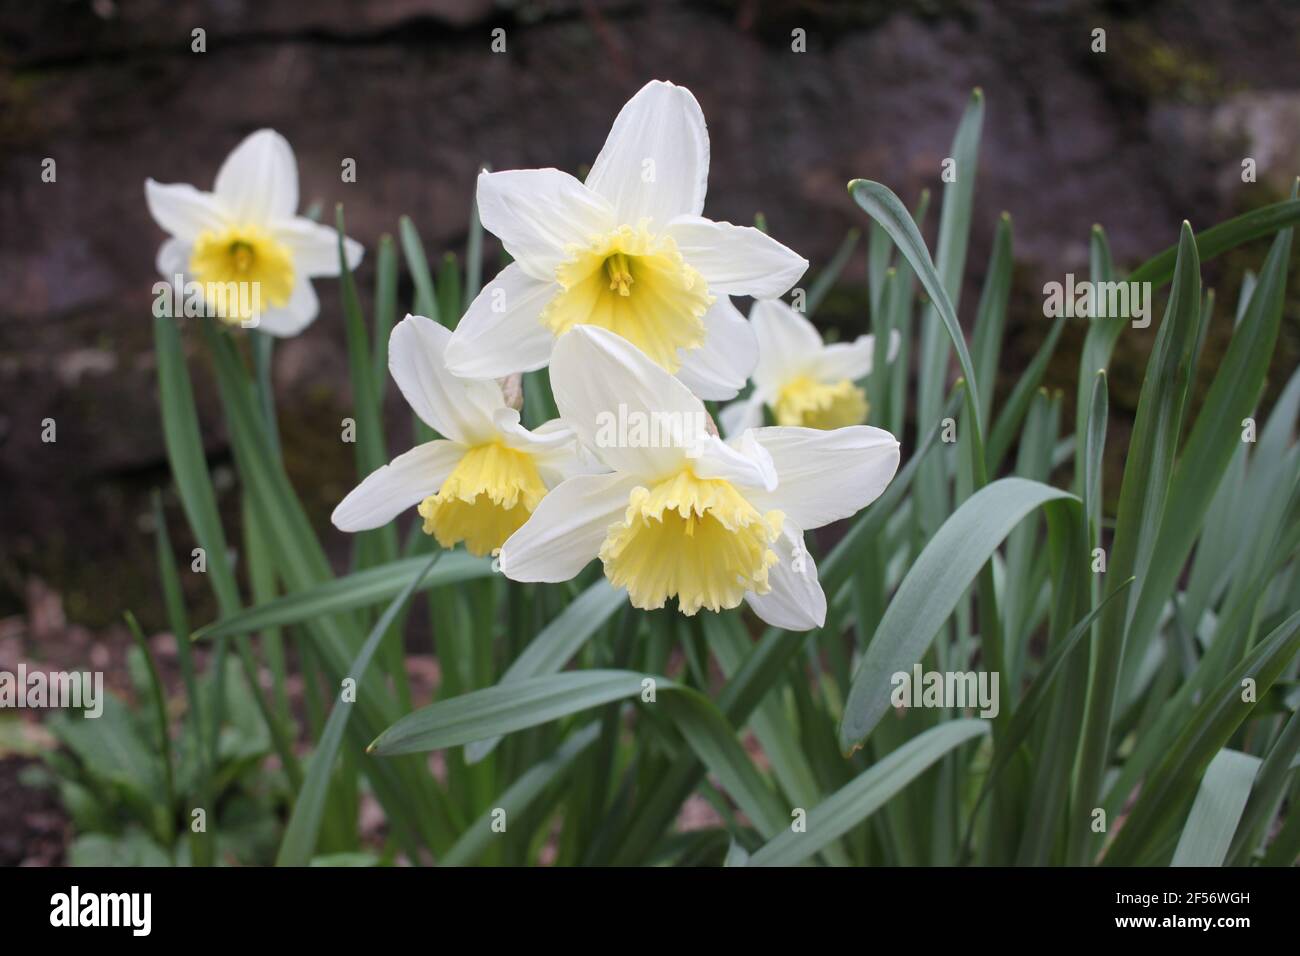 Jardines de paredes de piedra, narcisos floreciendo en un jardín suburbano. Narcisos en forma de trompeta blanca con hermosos centros de color amarillo pálido. Flores de primavera Foto de stock